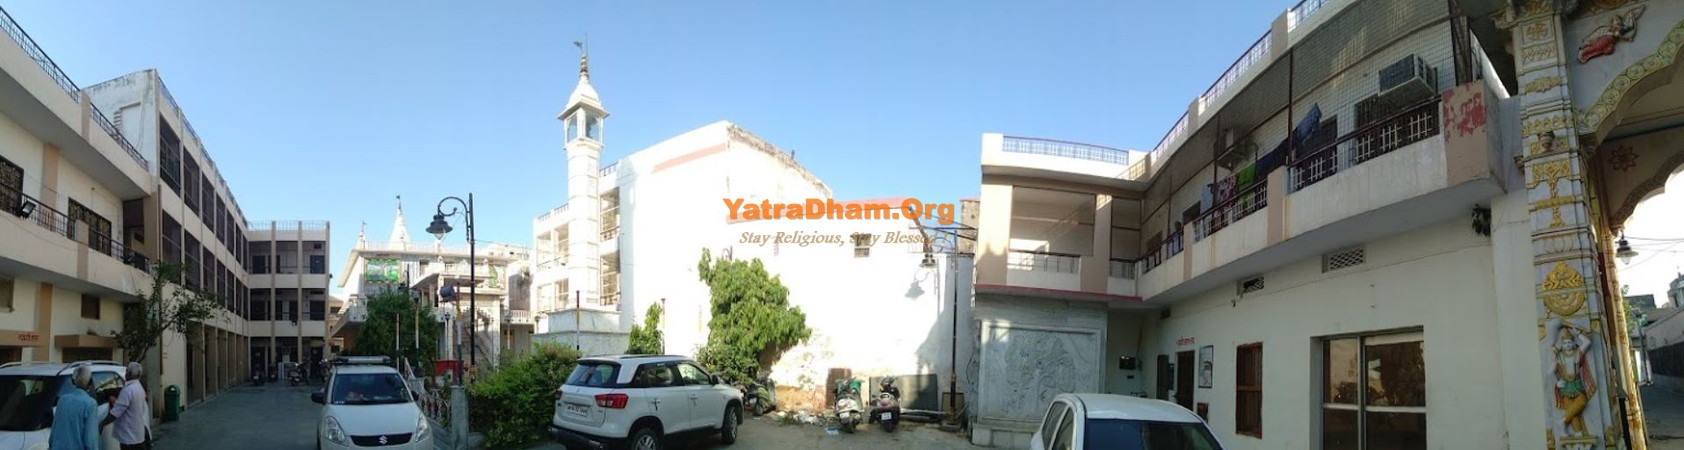 Varanasi Bhelupur Digambar Jain Dharamshala View